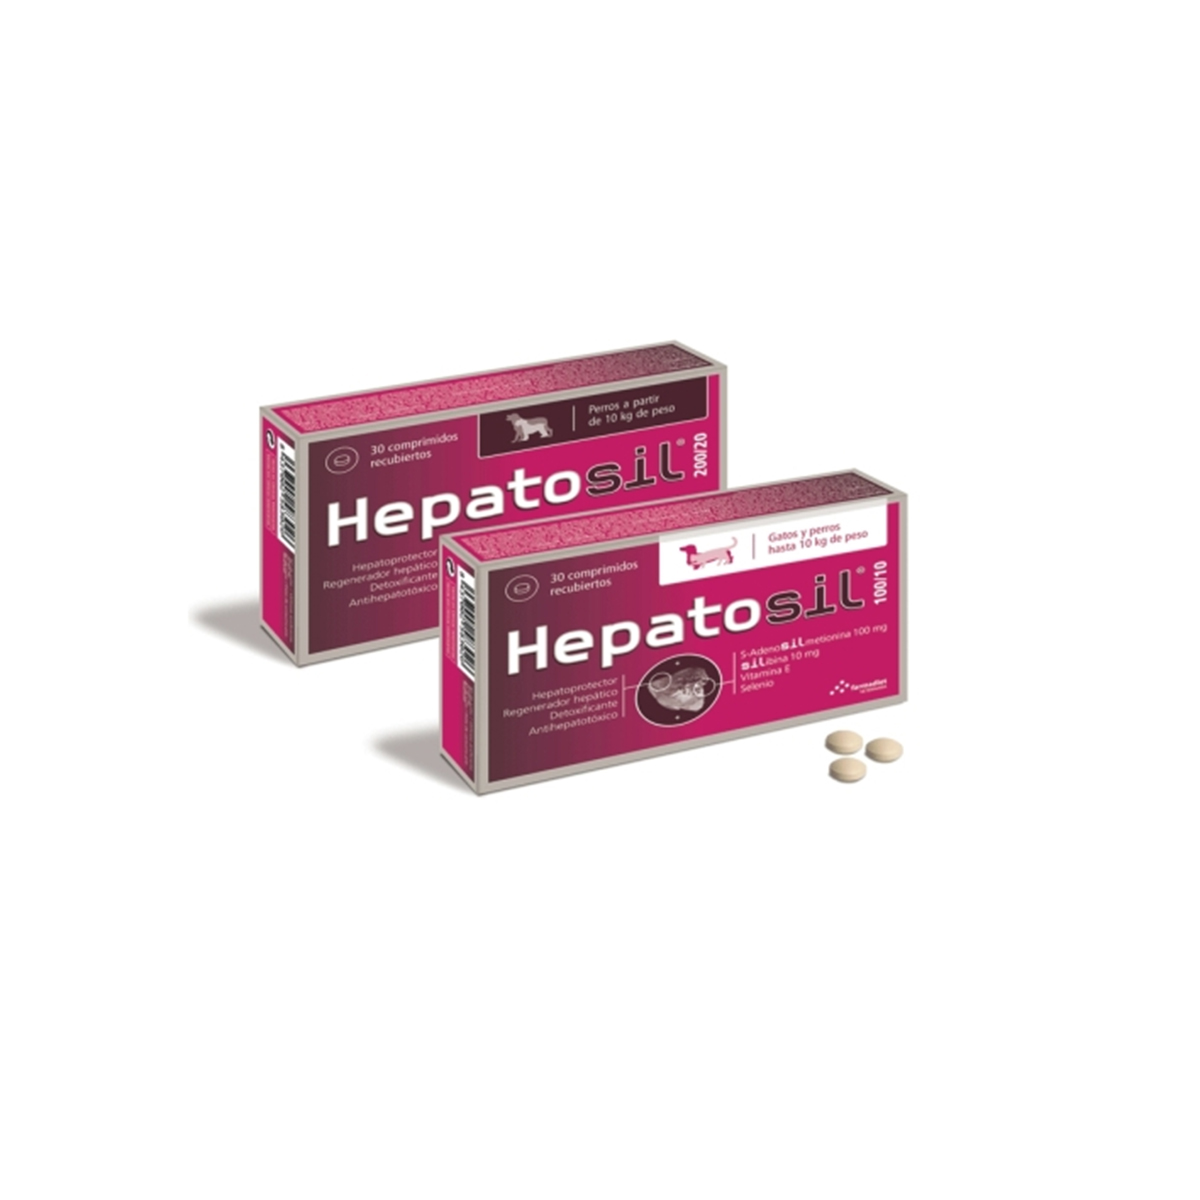 Hepatosil 200/20 x 30 tablete Farmadiet